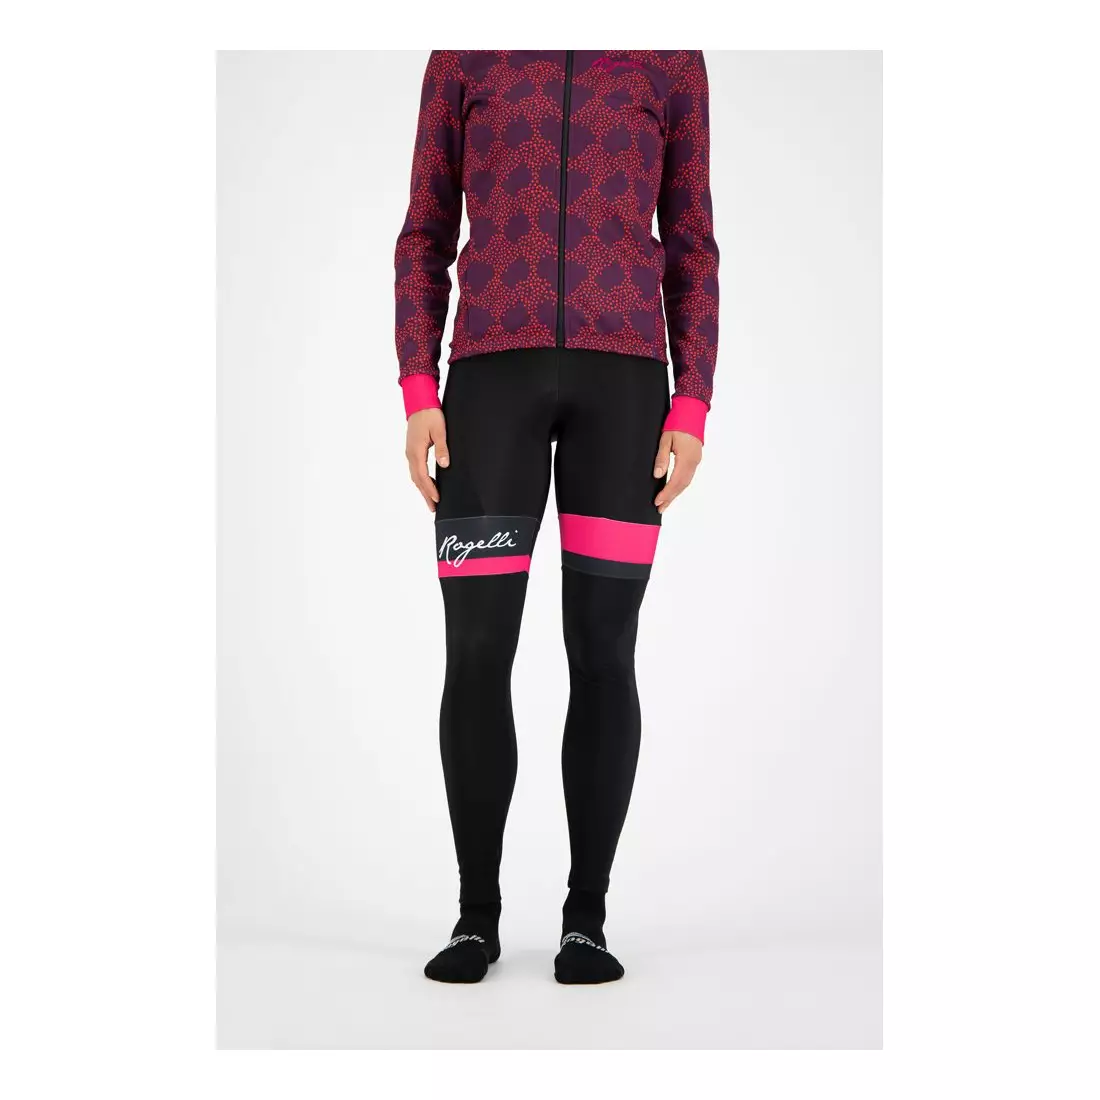 ROGELLI dámské zimní cyklistické kalhoty SELECT black/pink